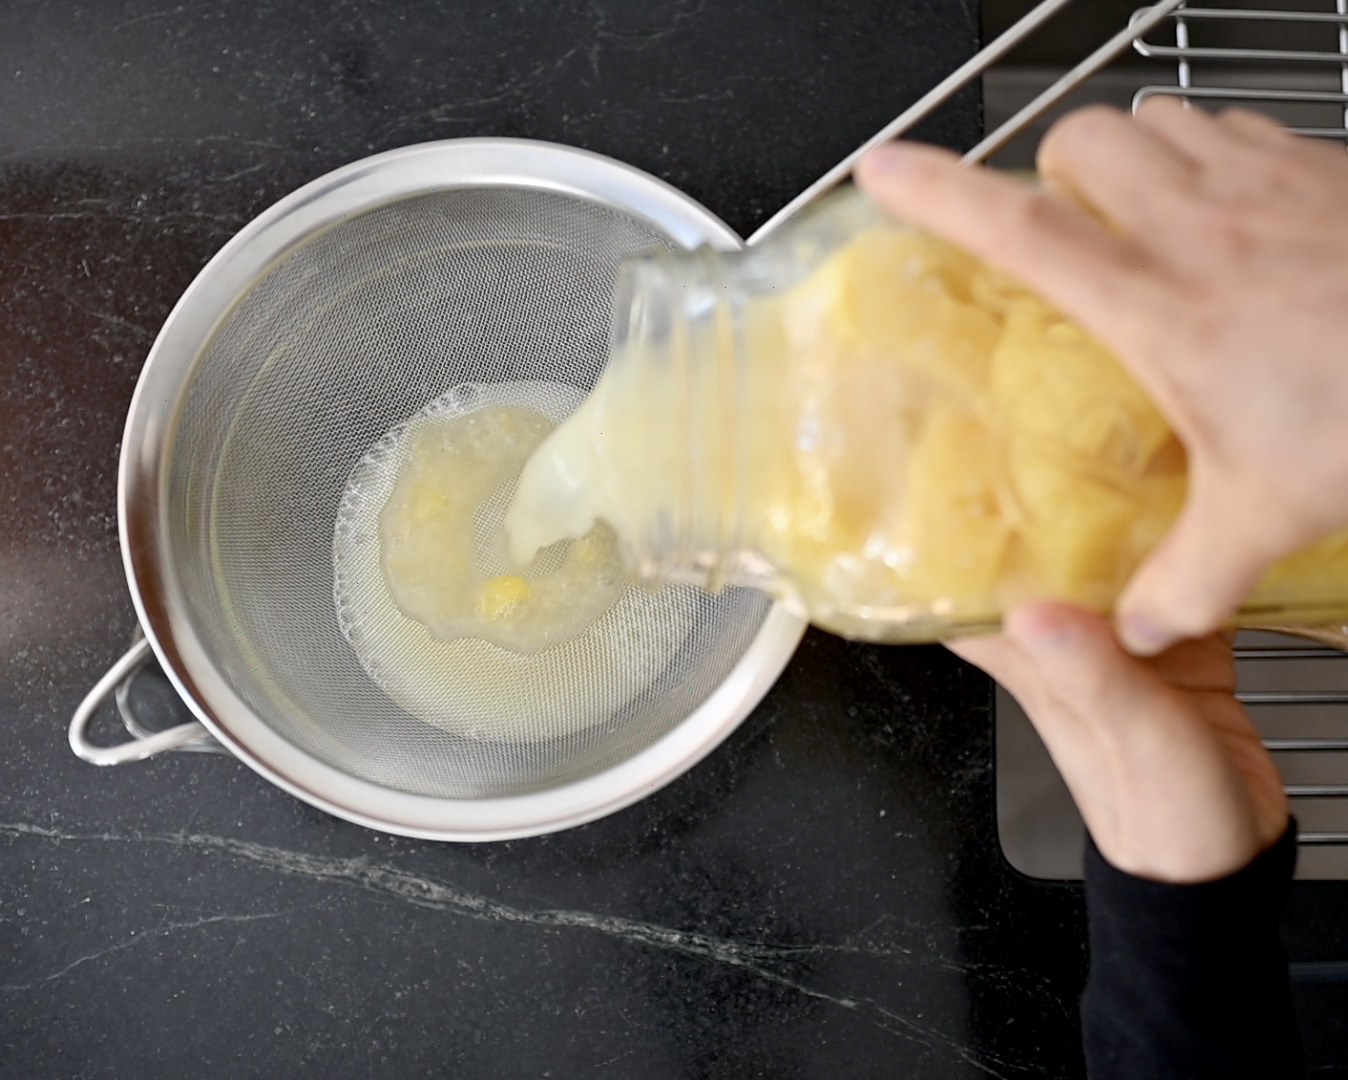 straining the pineapple vinegar